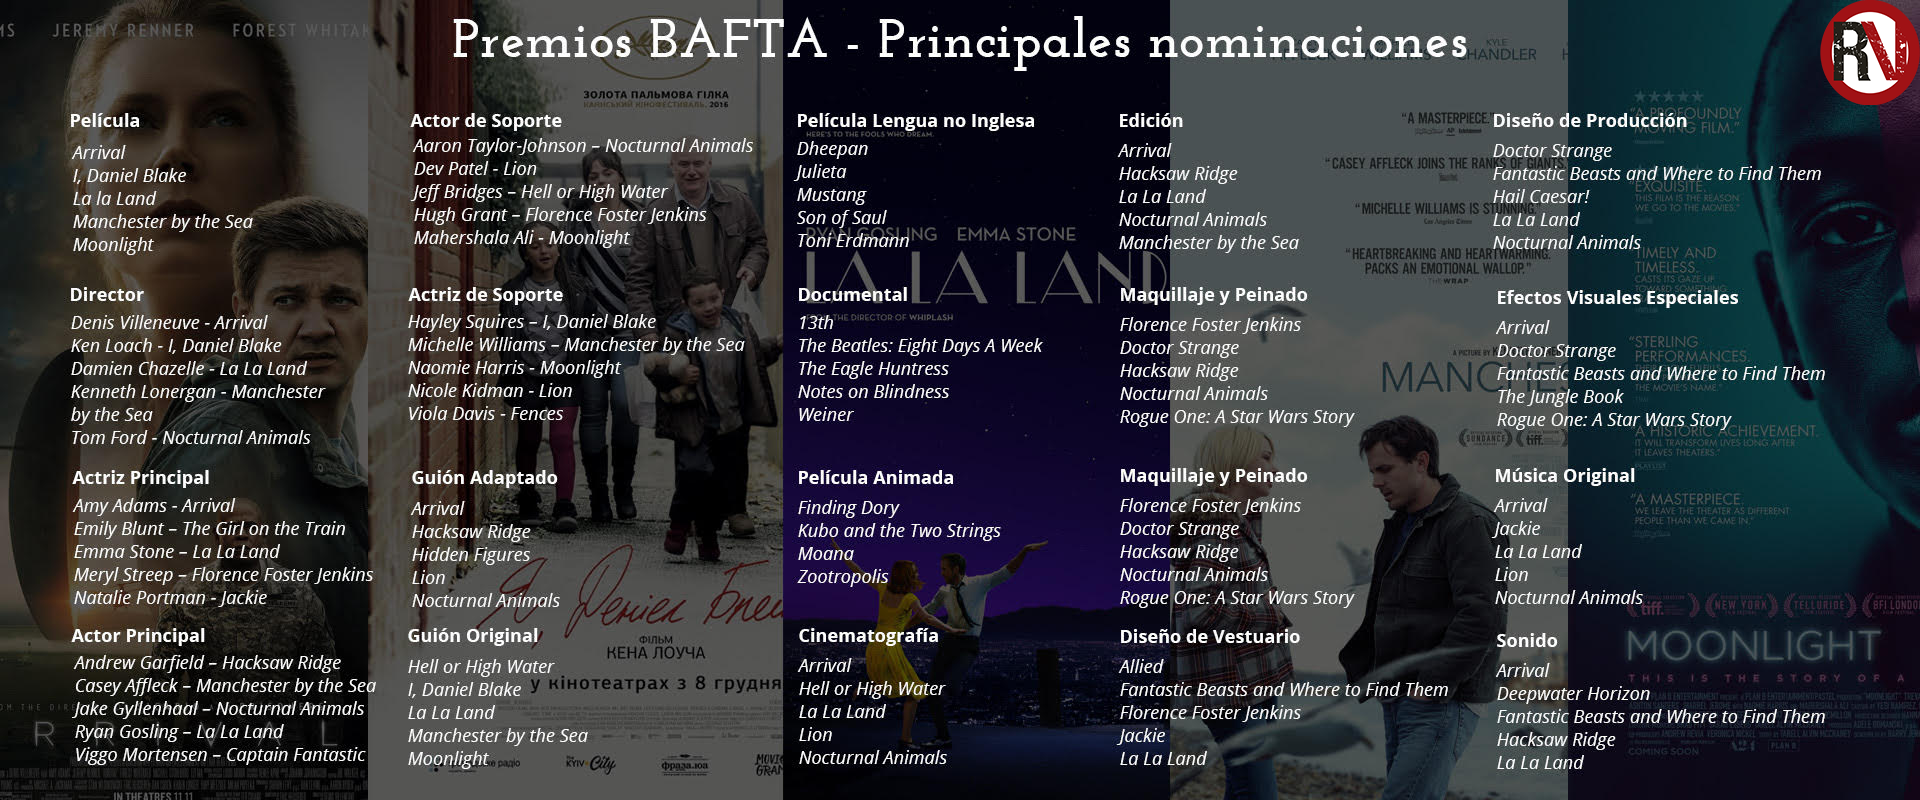 Anuncian las nominadas a los premios BAFTA-2017 (Academia de Cine Británica)